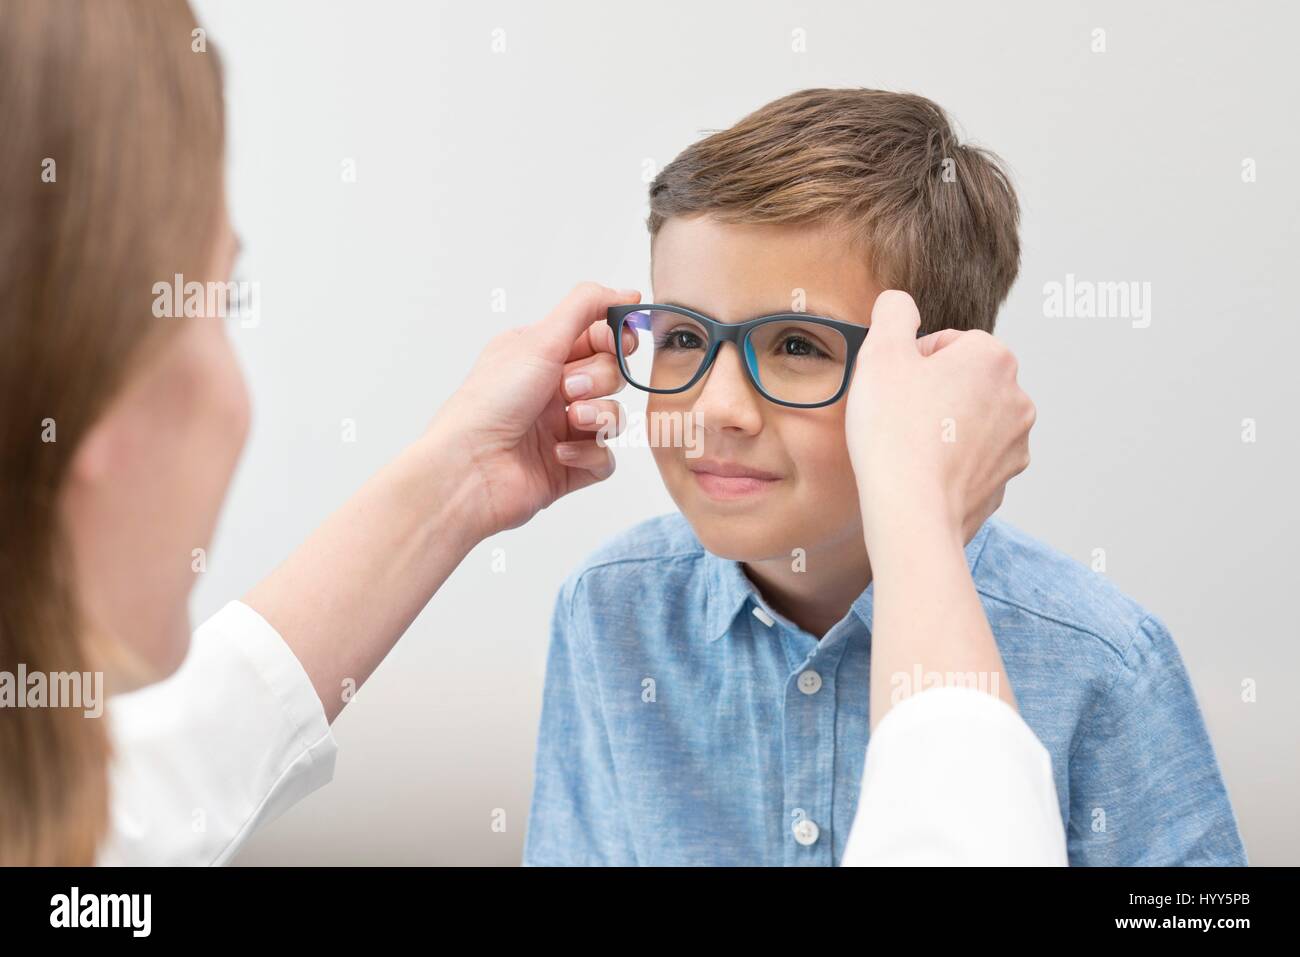 Weibliche Optiker junge Brille aufsetzen Stockfotografie - Alamy